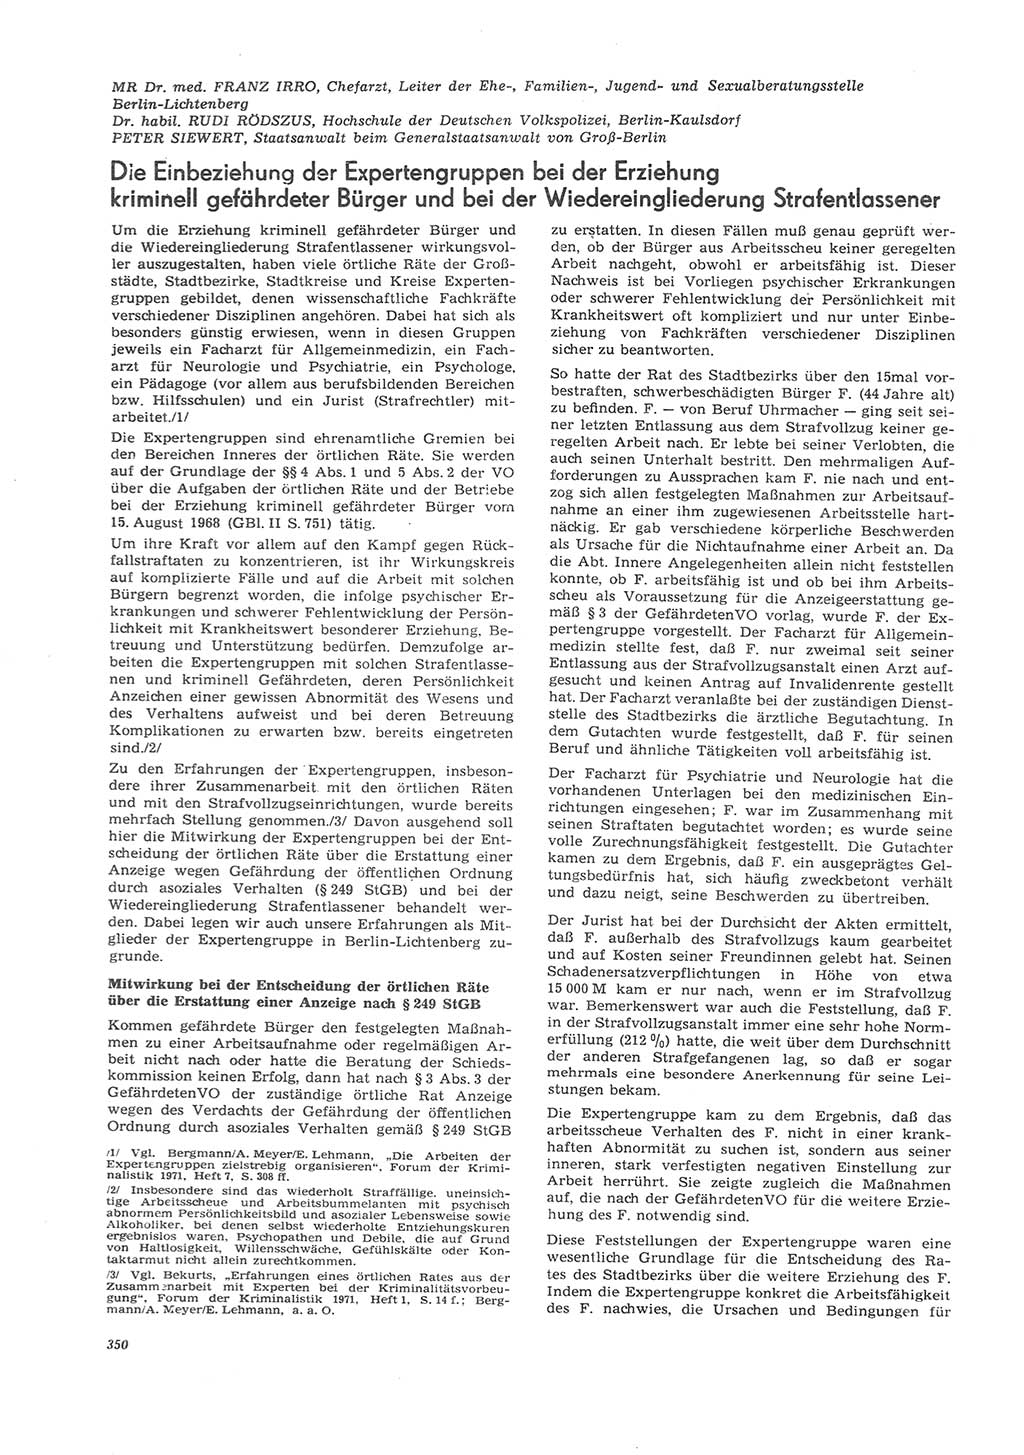 Neue Justiz (NJ), Zeitschrift für Recht und Rechtswissenschaft [Deutsche Demokratische Republik (DDR)], 26. Jahrgang 1972, Seite 350 (NJ DDR 1972, S. 350)